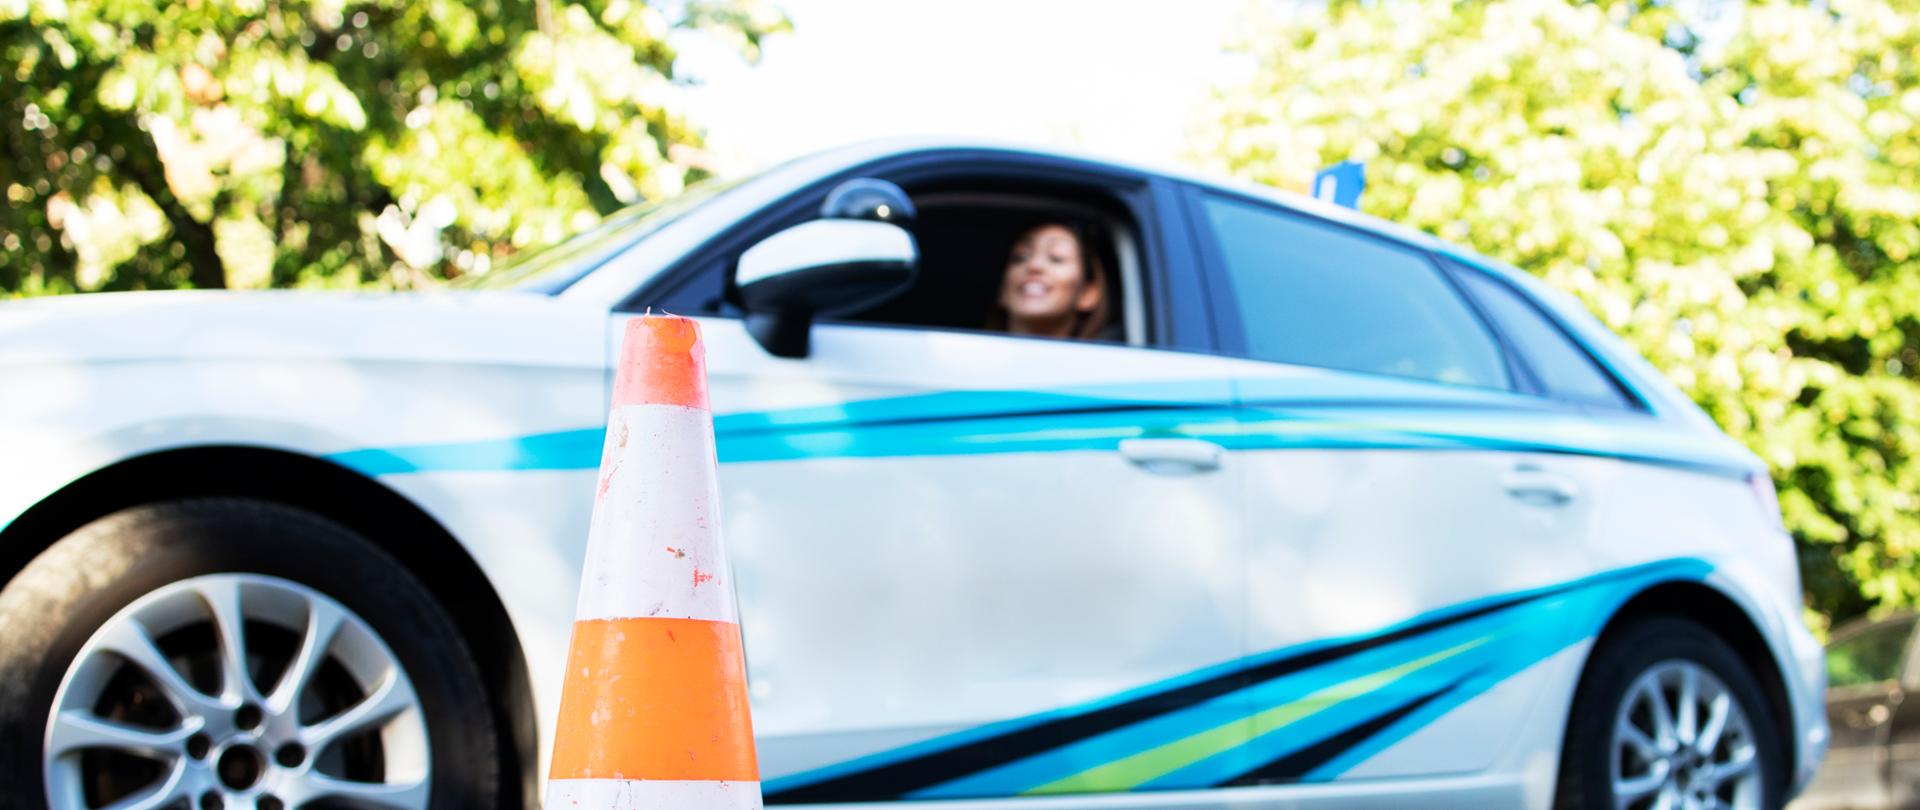 Młoda kobieta siedzi w samochodzie szkolnym gotowy do zajęć nauki jazdy.